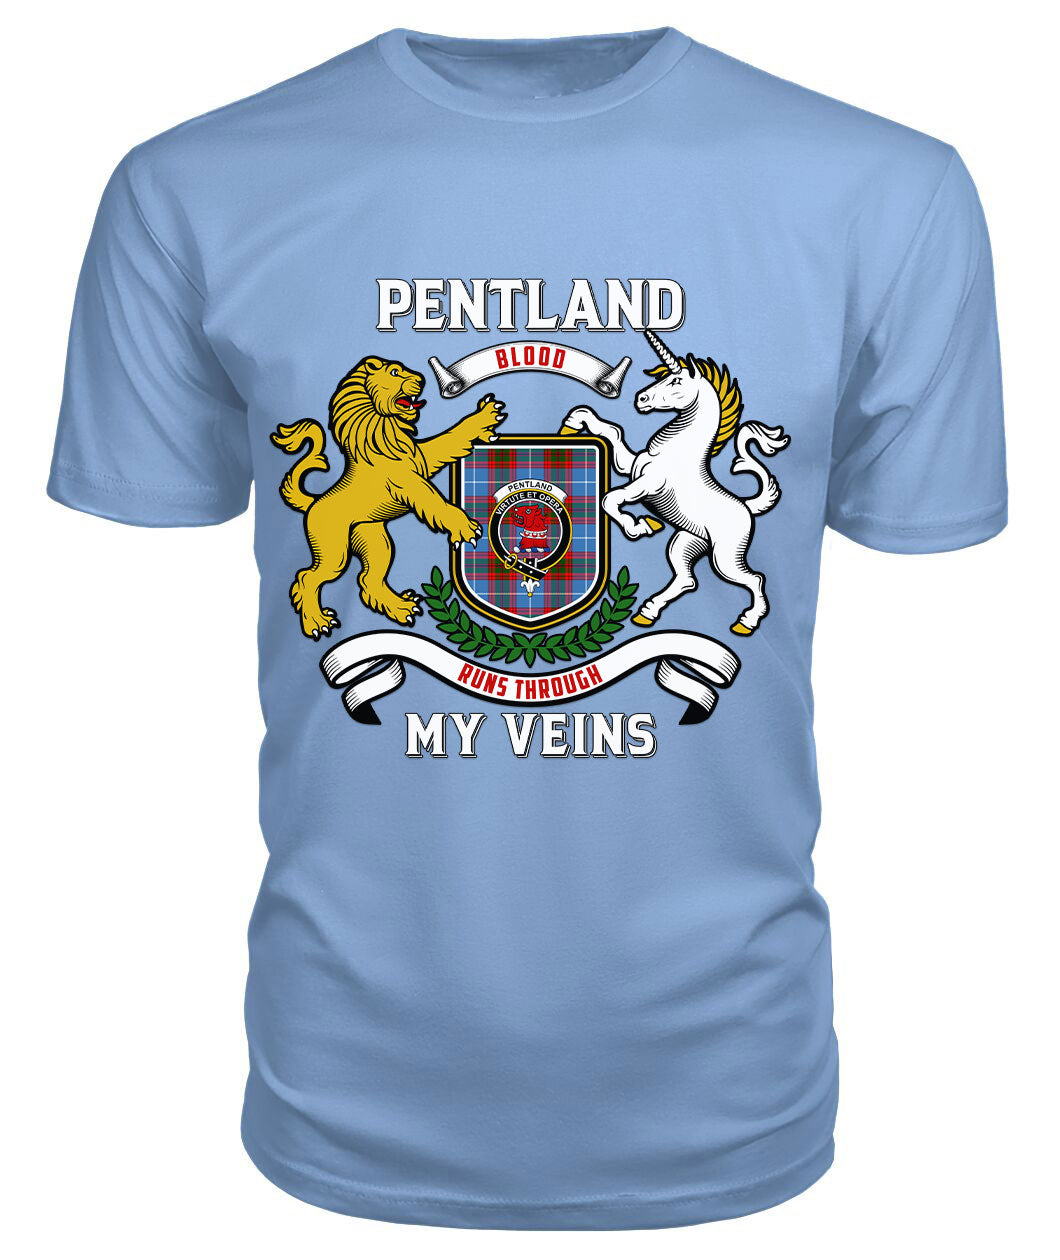 Pentland Tartan Crest 2D T-shirt - Blood Runs Through My Veins Style